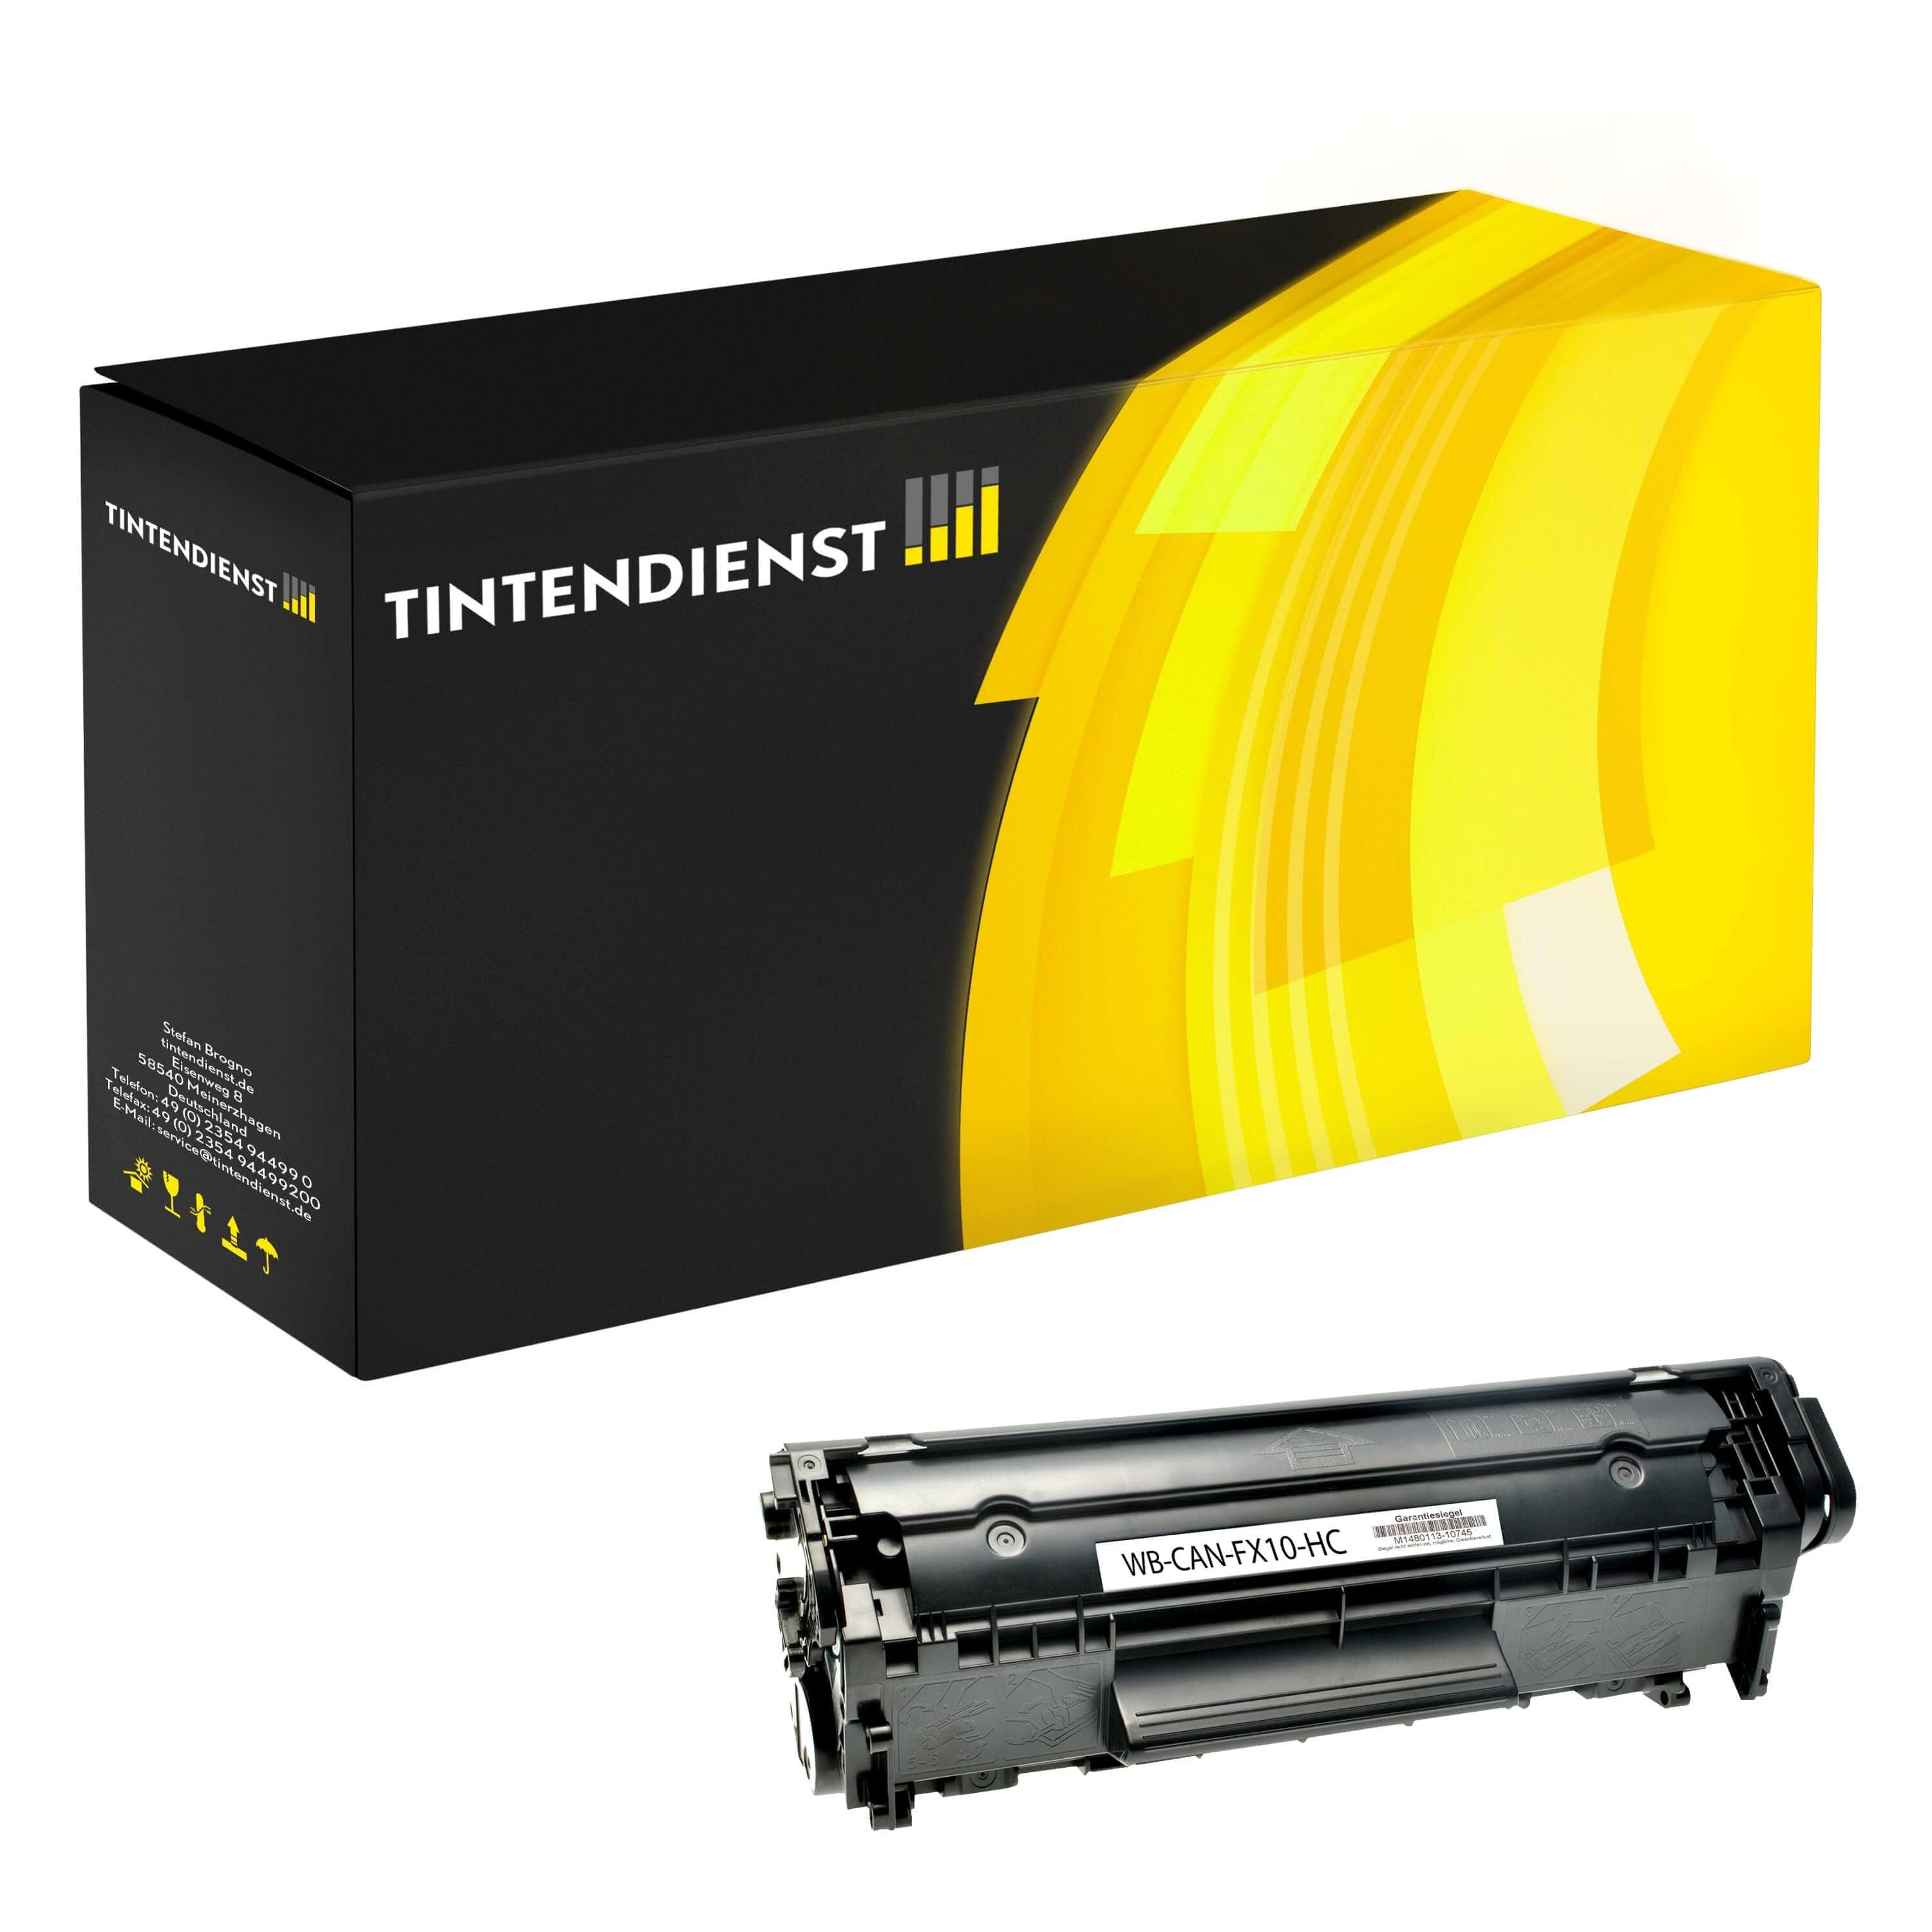 Toner kompatibel für Canon i-SENSYS Fax L 100 (0263B002 / FX-10) Schwarz